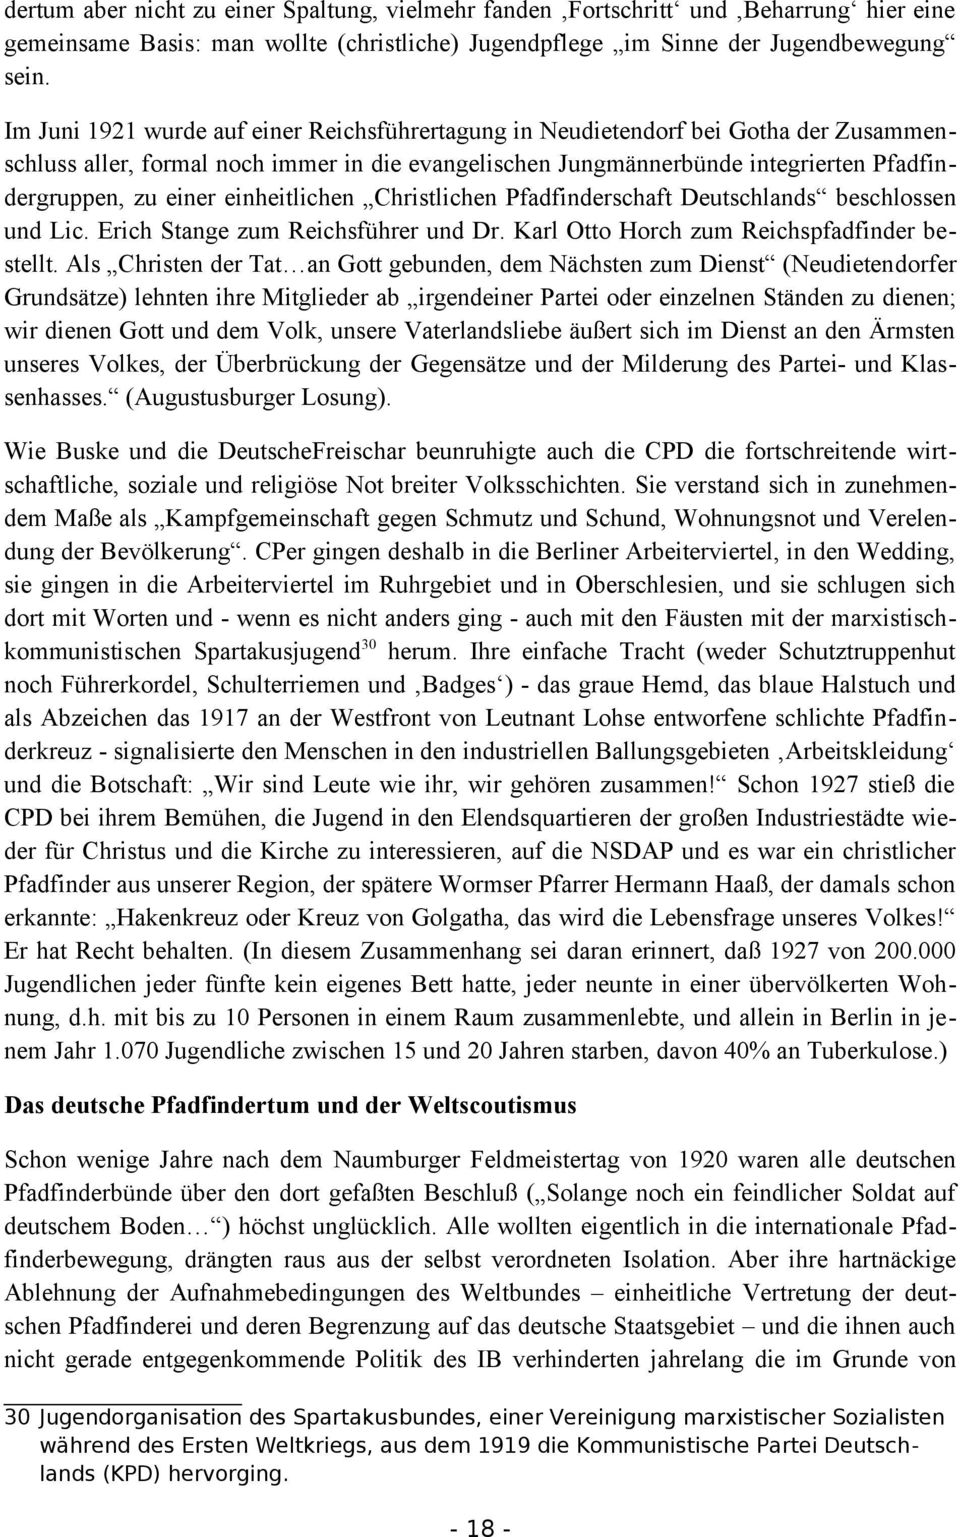 einheitlichen Christlichen Pfadfinderschaft Deutschlands beschlossen und Lic. Erich Stange zum Reichsführer und Dr. Karl Otto Horch zum Reichspfadfinder bestellt.